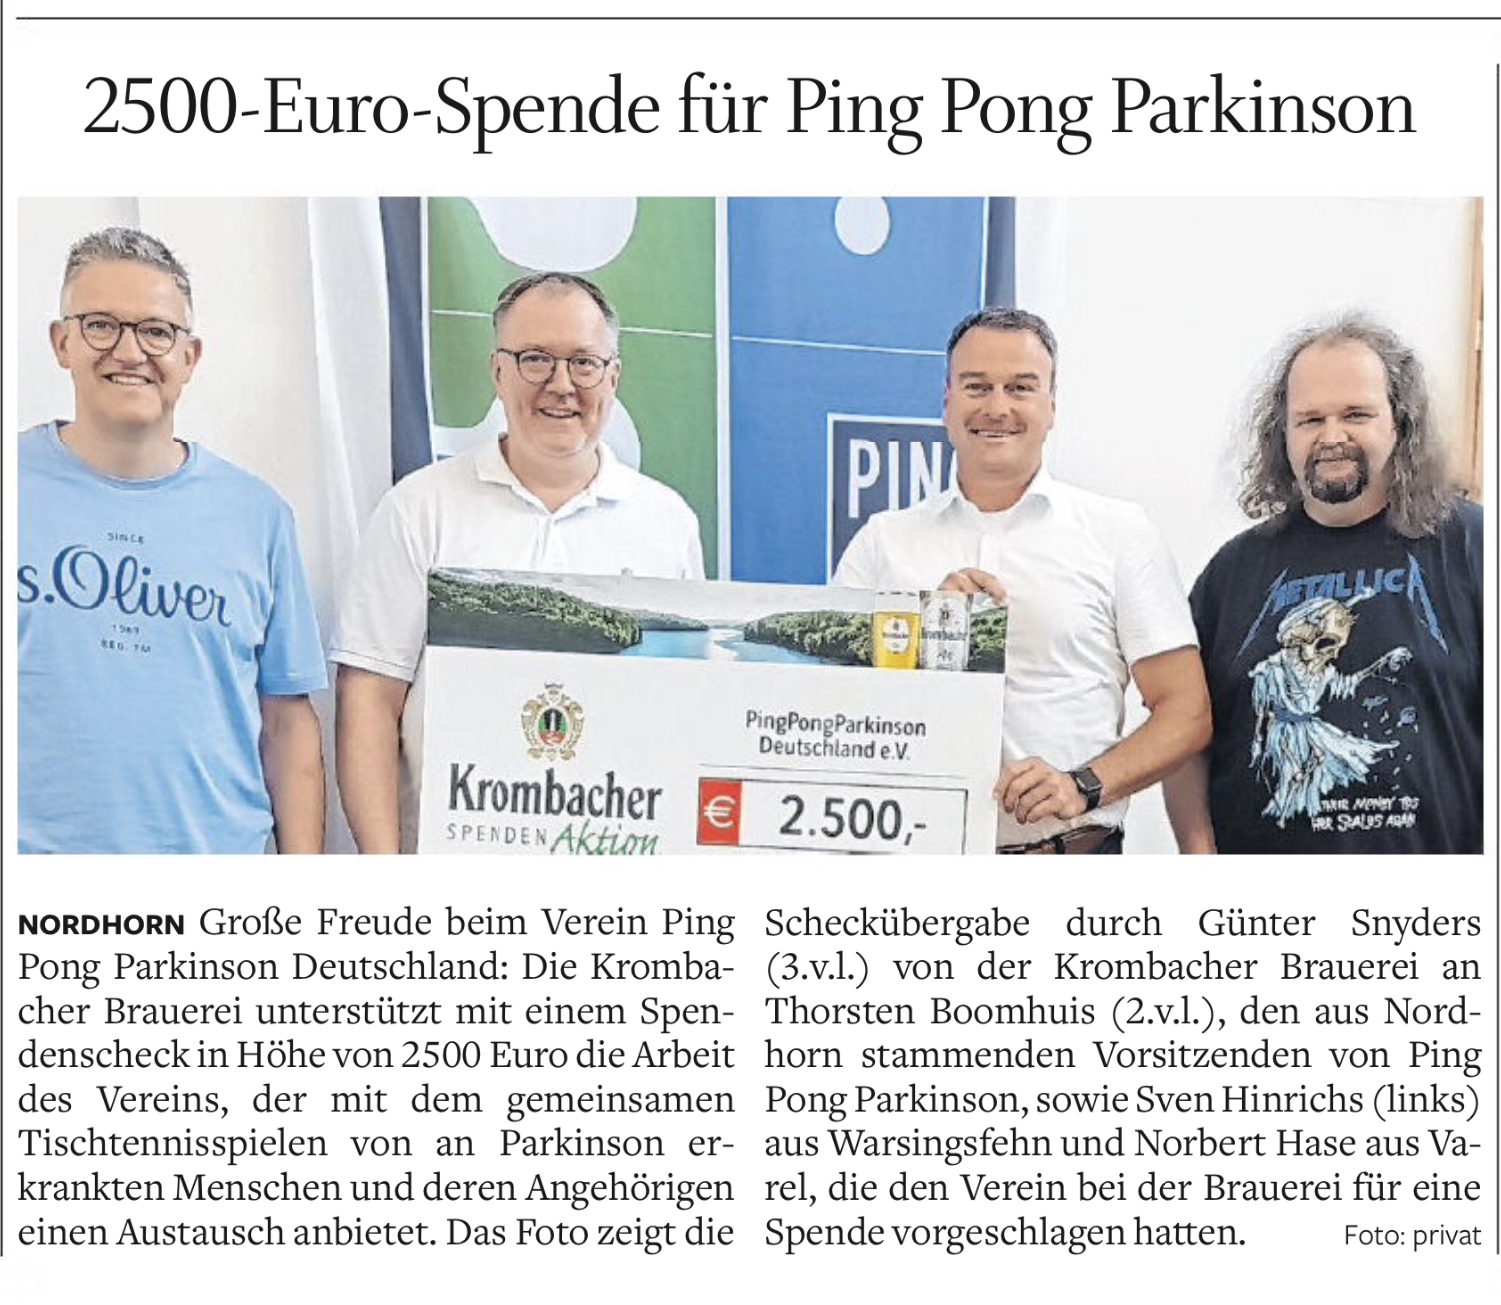 2500-Euro-Spende für Ping Pong Parkinson